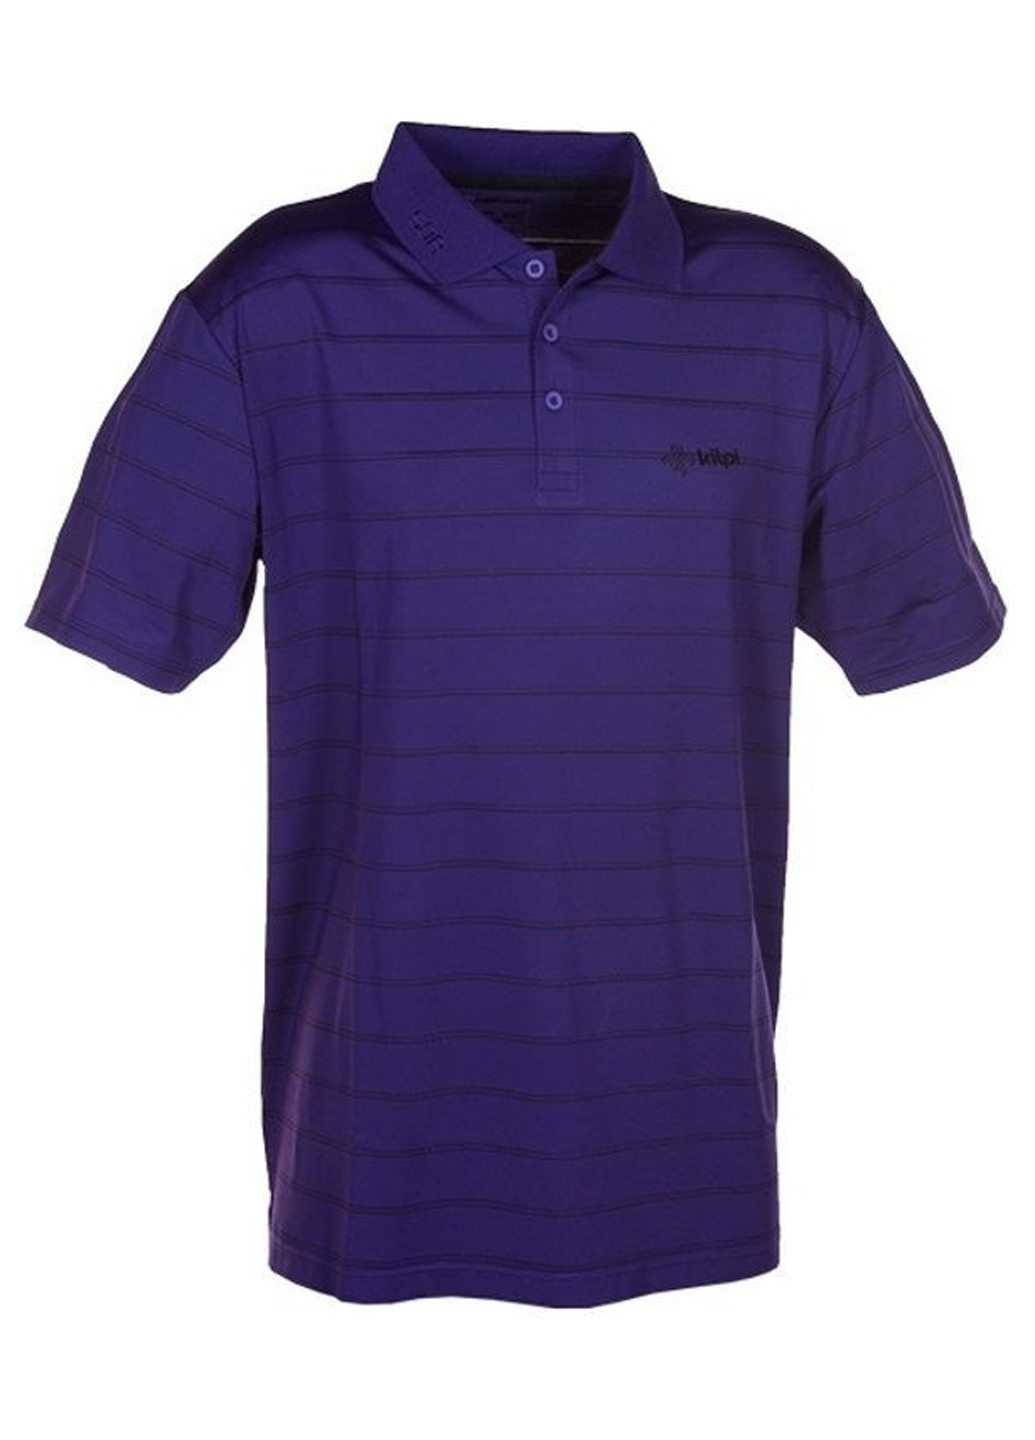 Фиолетовая футболка-поло для мужчин Kilpi в полоску